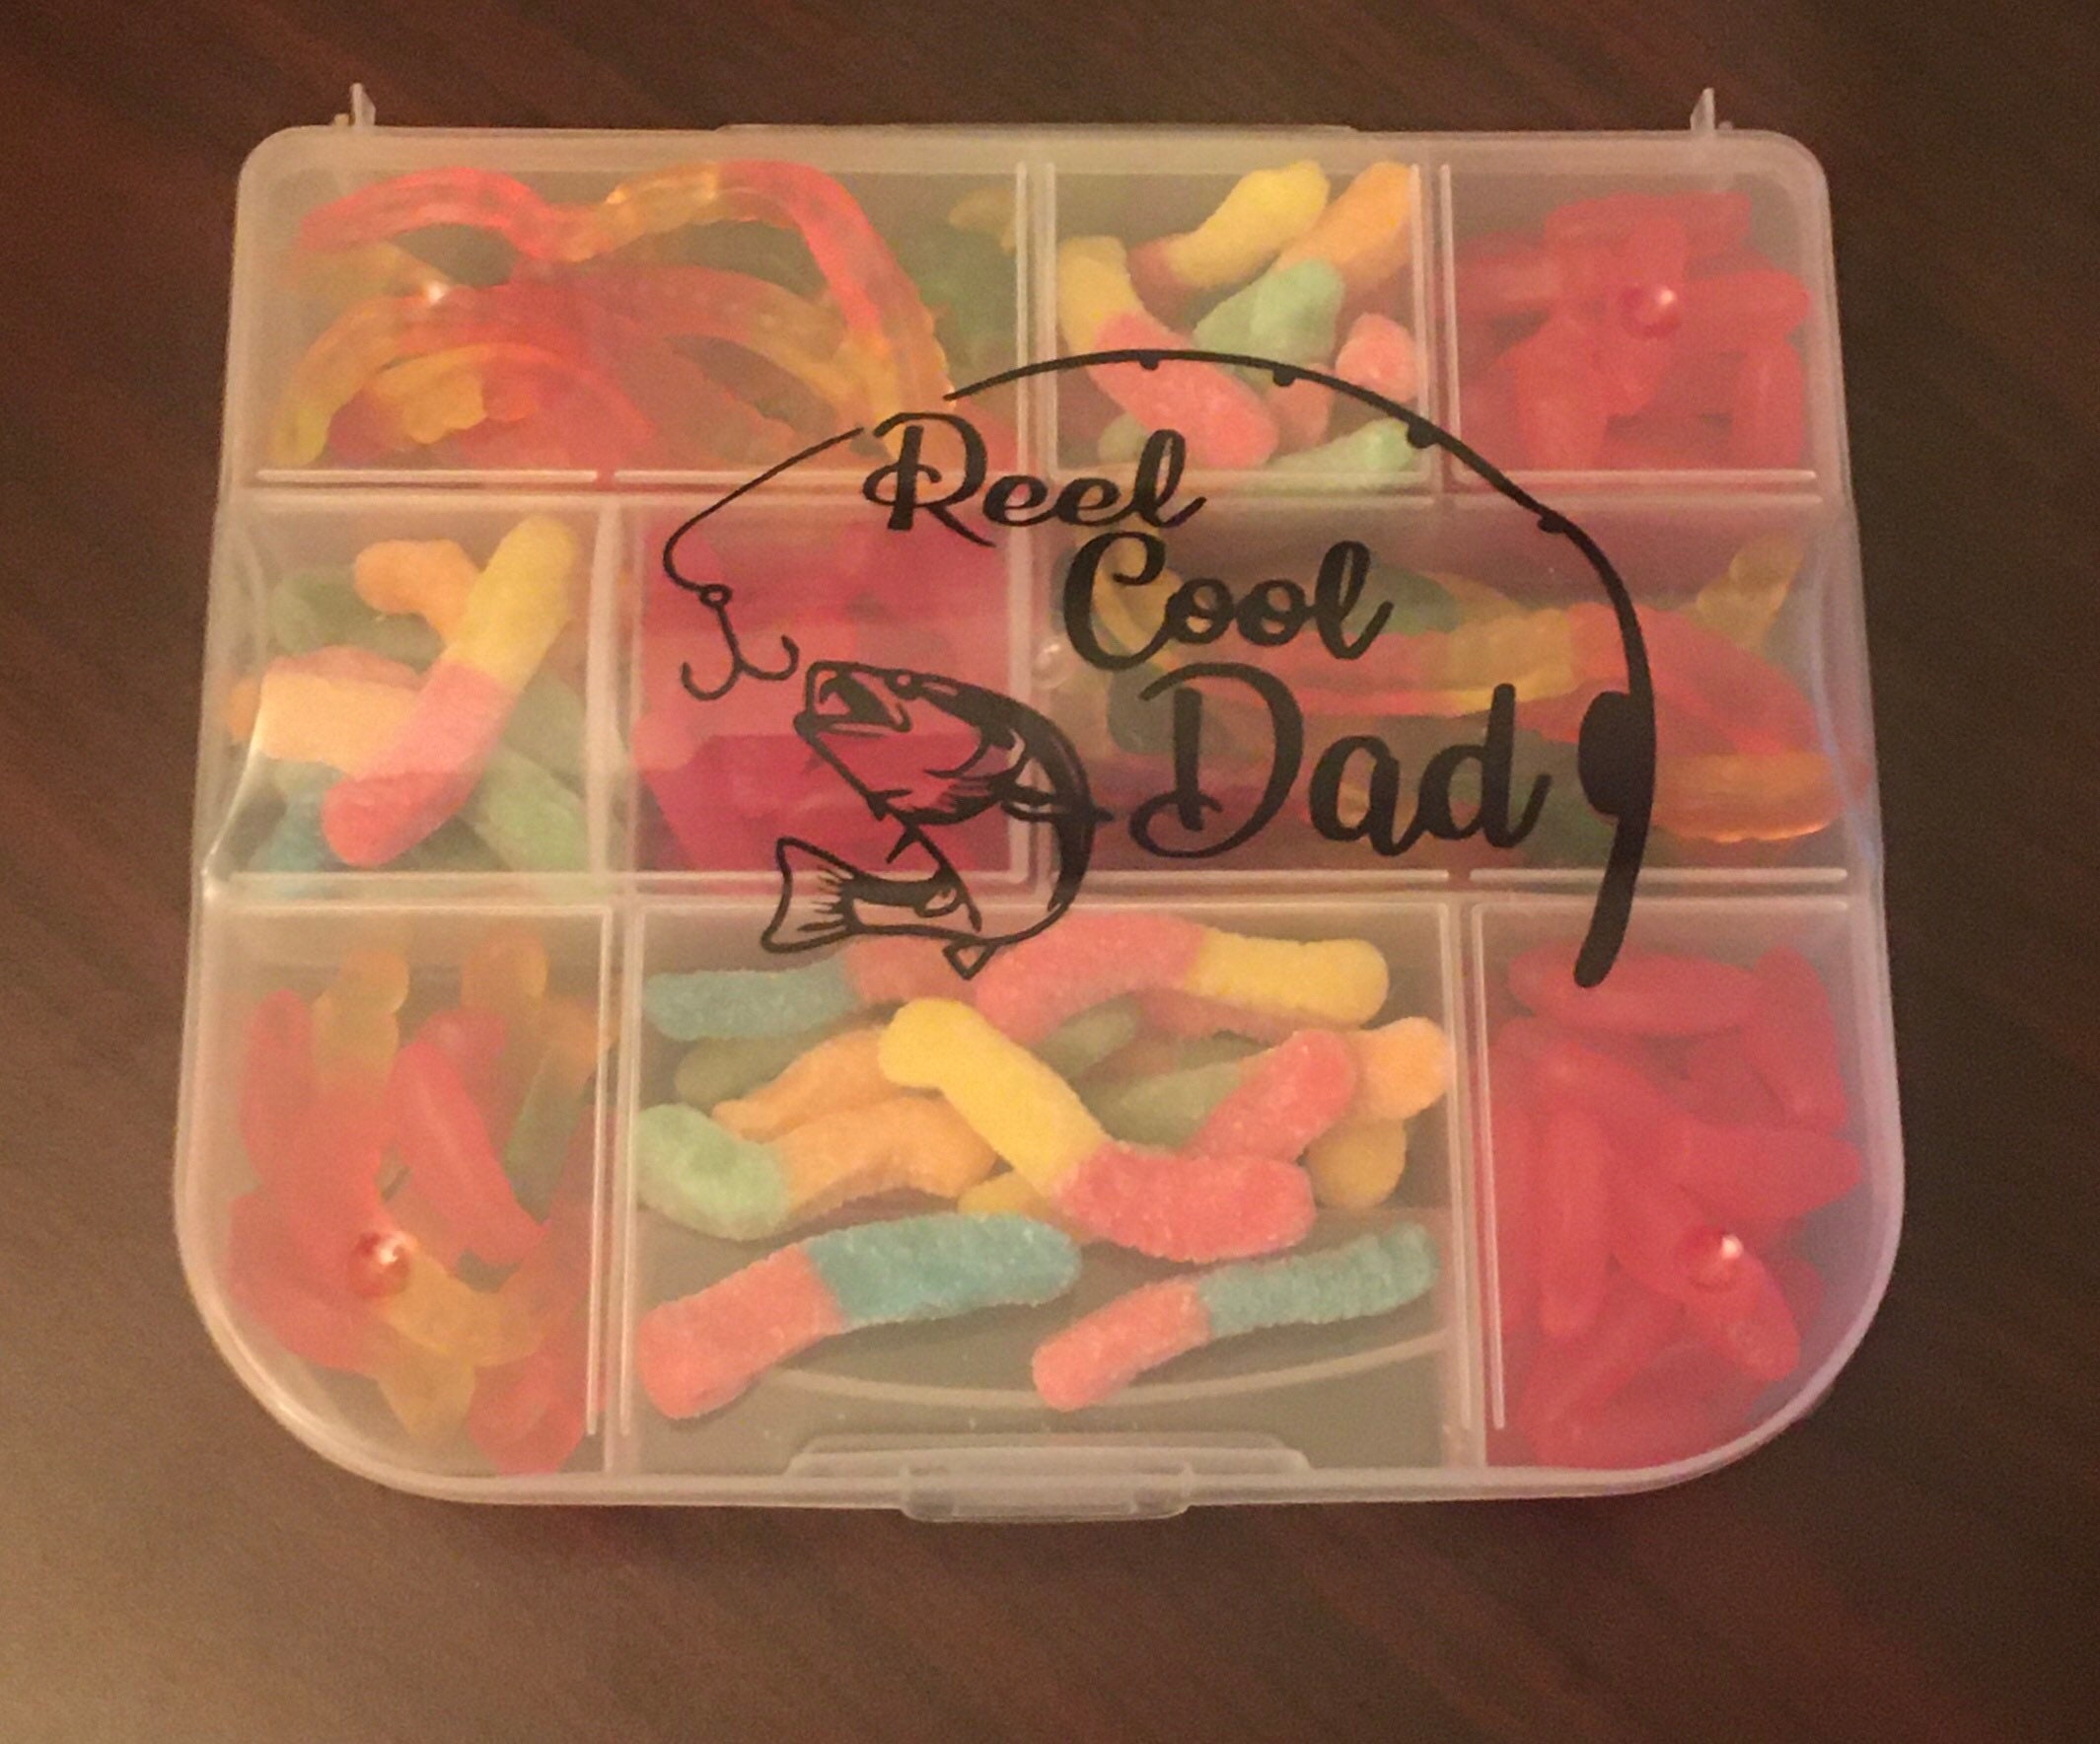 Tacklebox/toolbox Candy Arrangement 